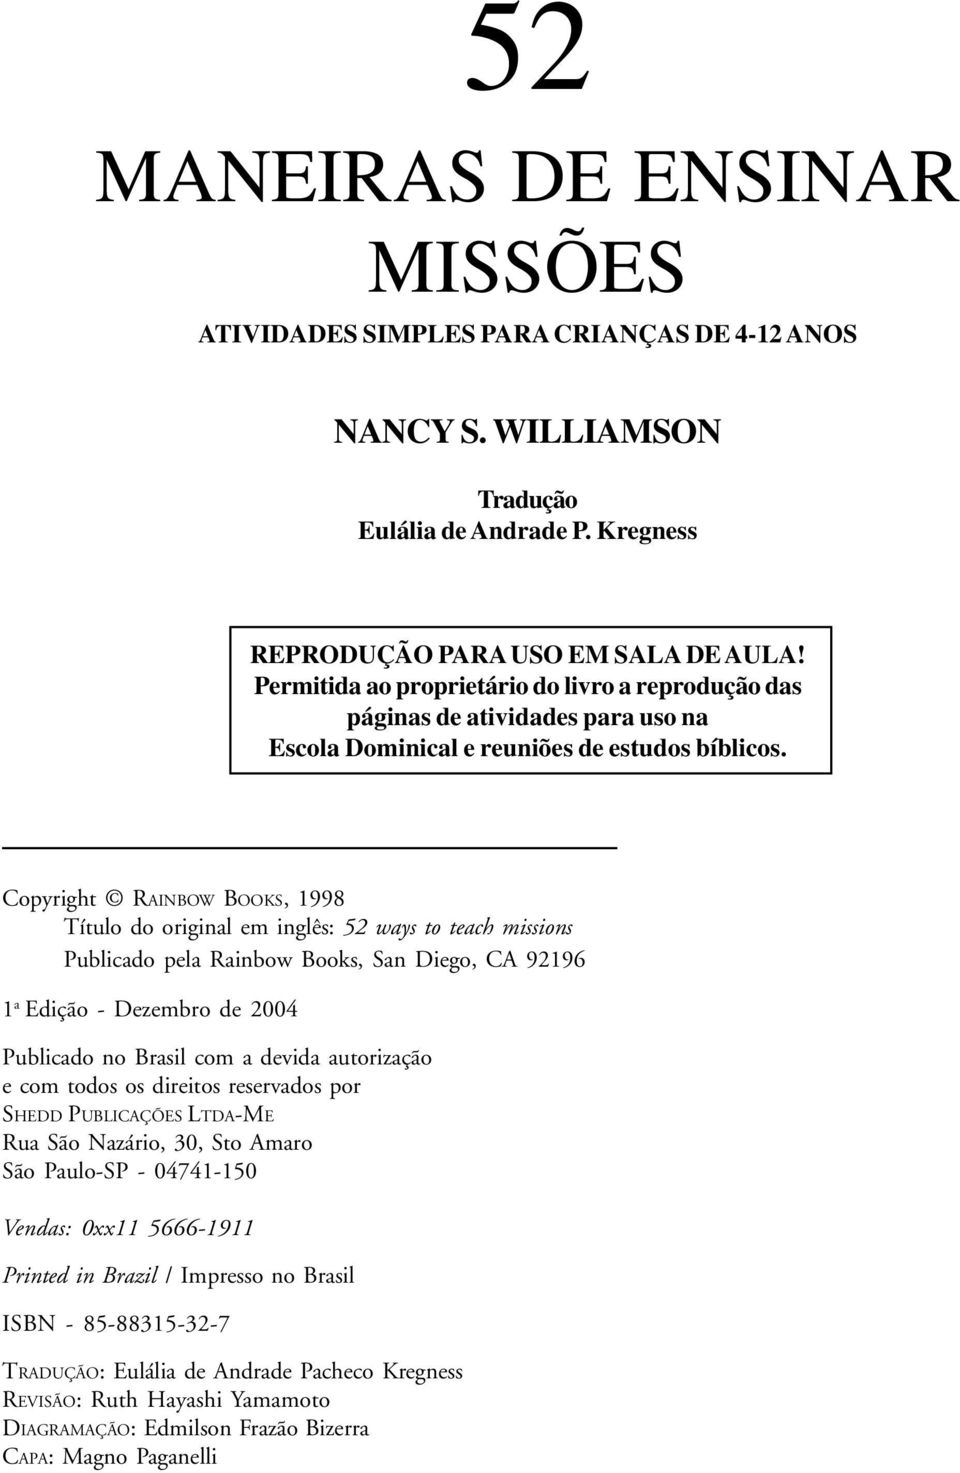 Copyright RAINBOW BOOKS, 1998 Título do original em inglês: 52 ways to teach missions Publicado pela Rainbow Books, San Diego, CA 92196 1 a Edição - Dezembro de 2004 Publicado no Brasil com a devida